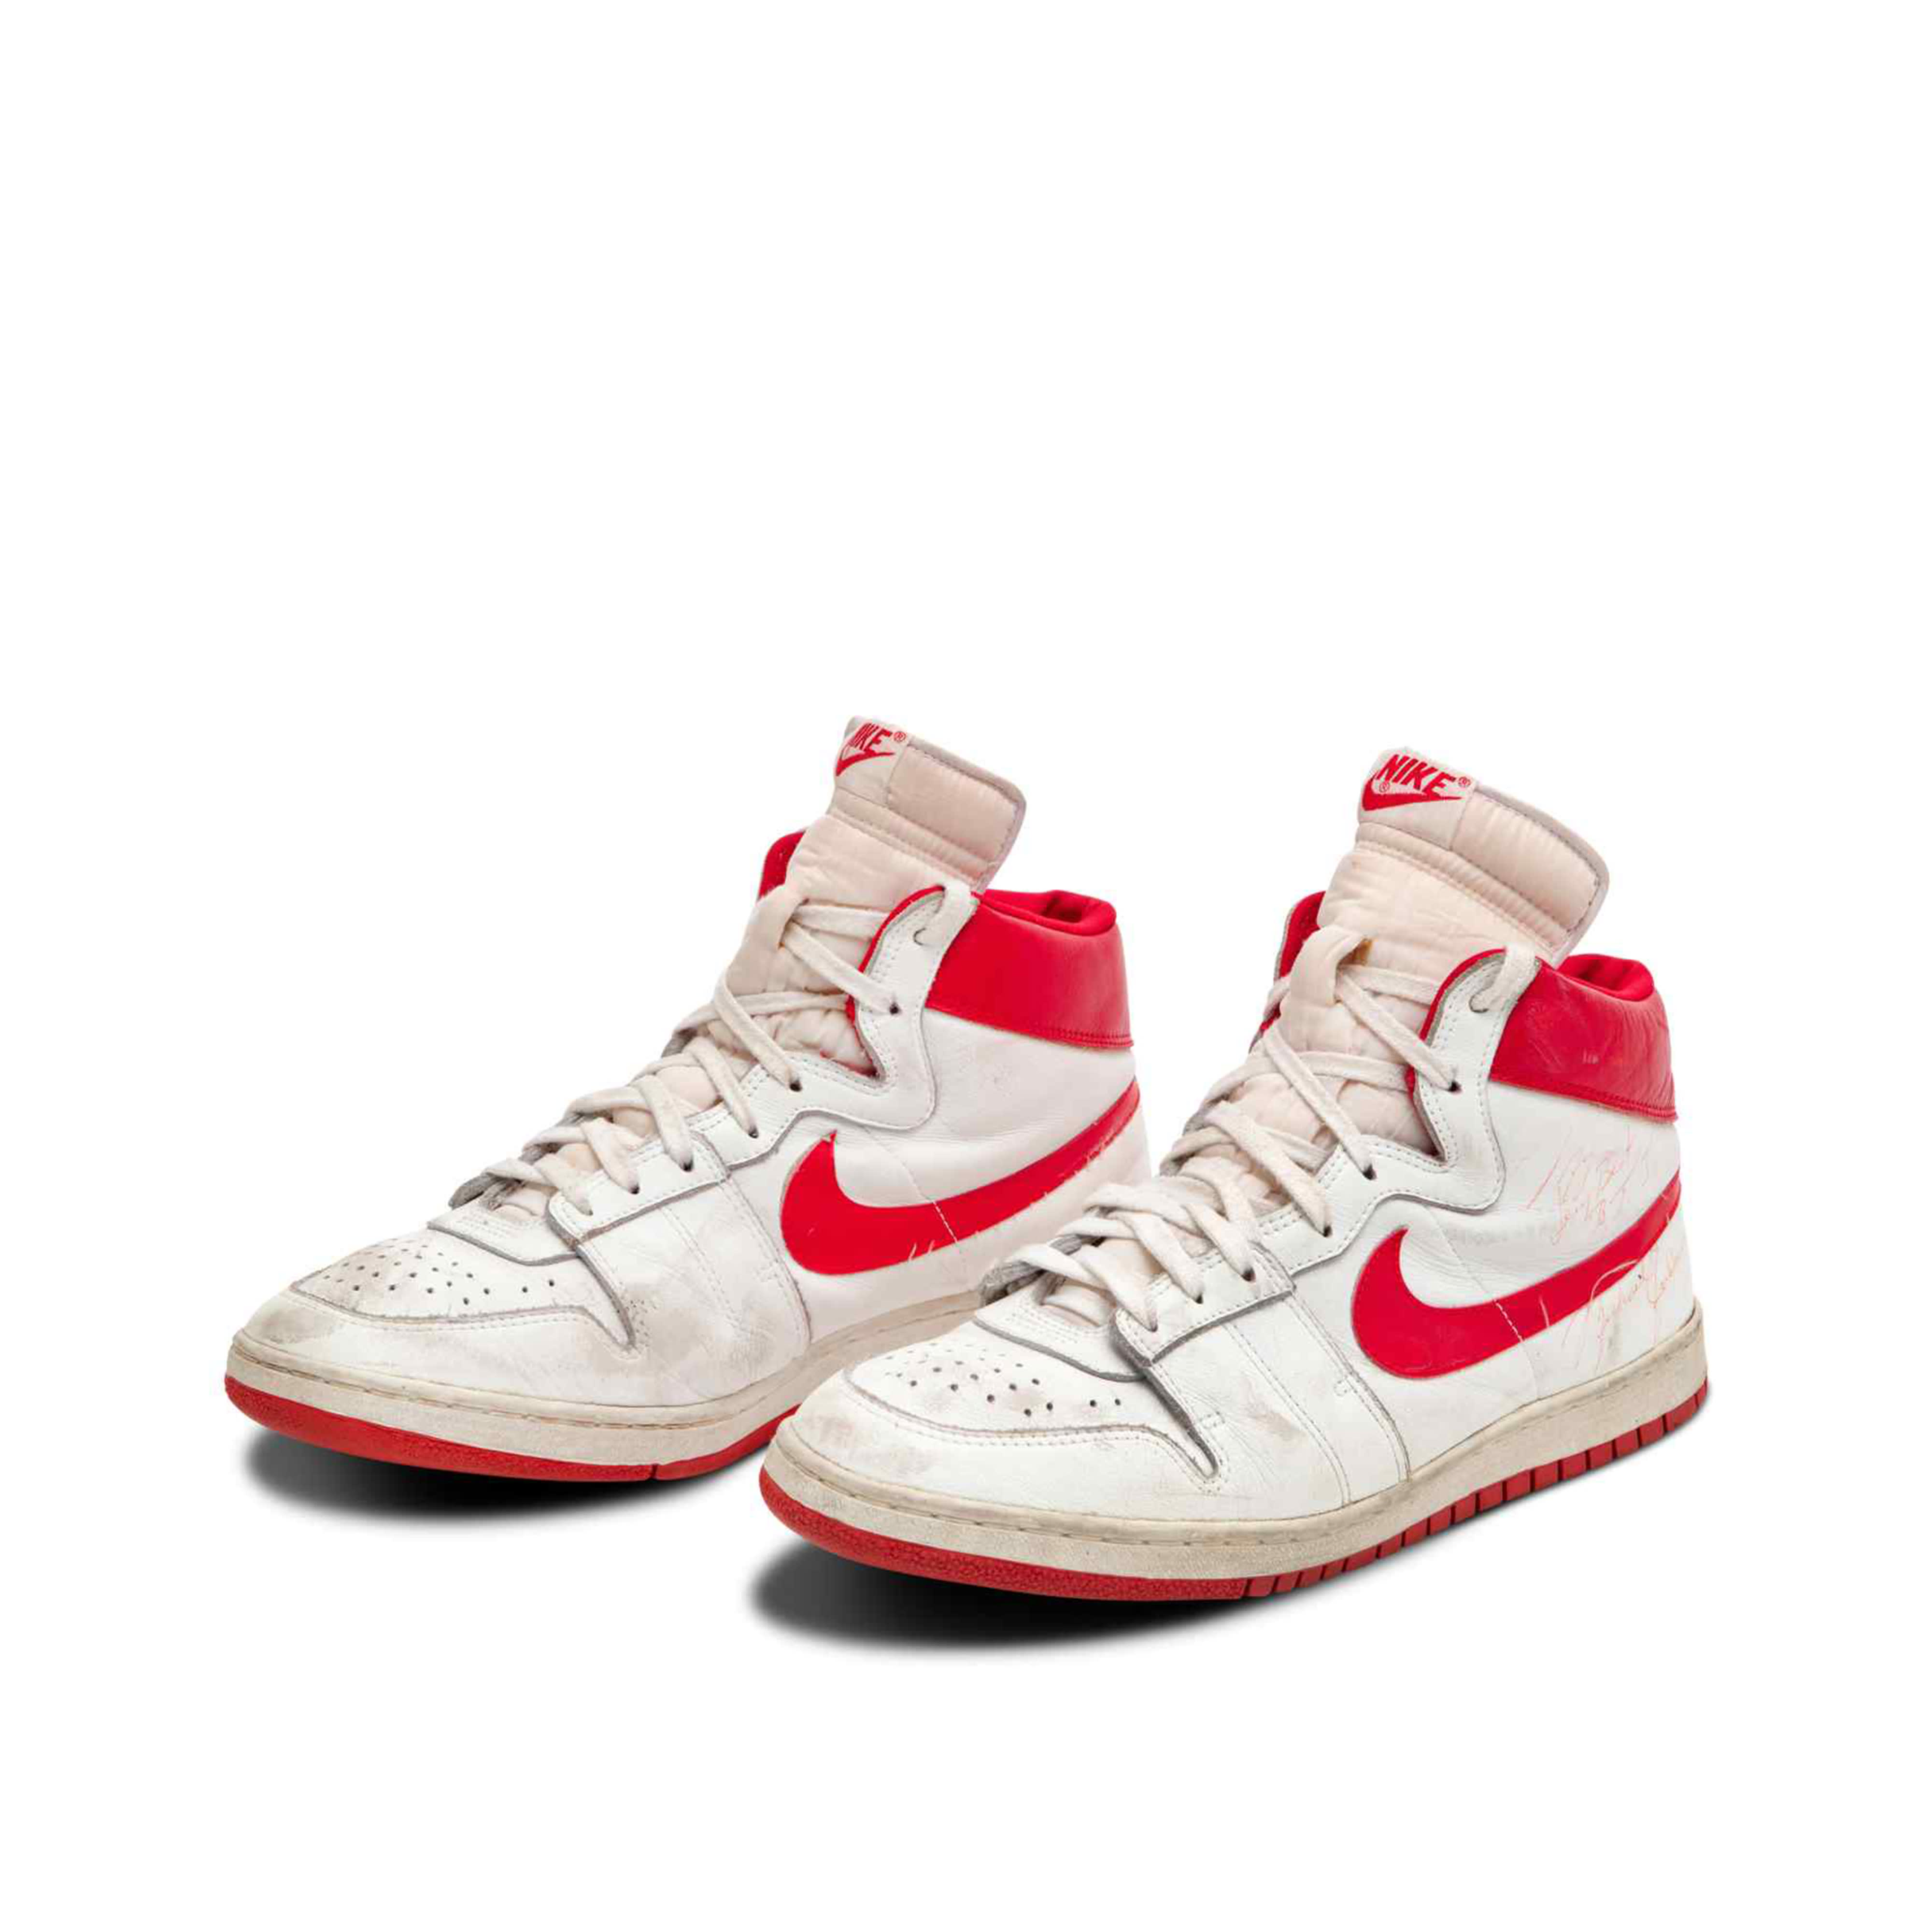 Michael Jordan's rookie sneakers 